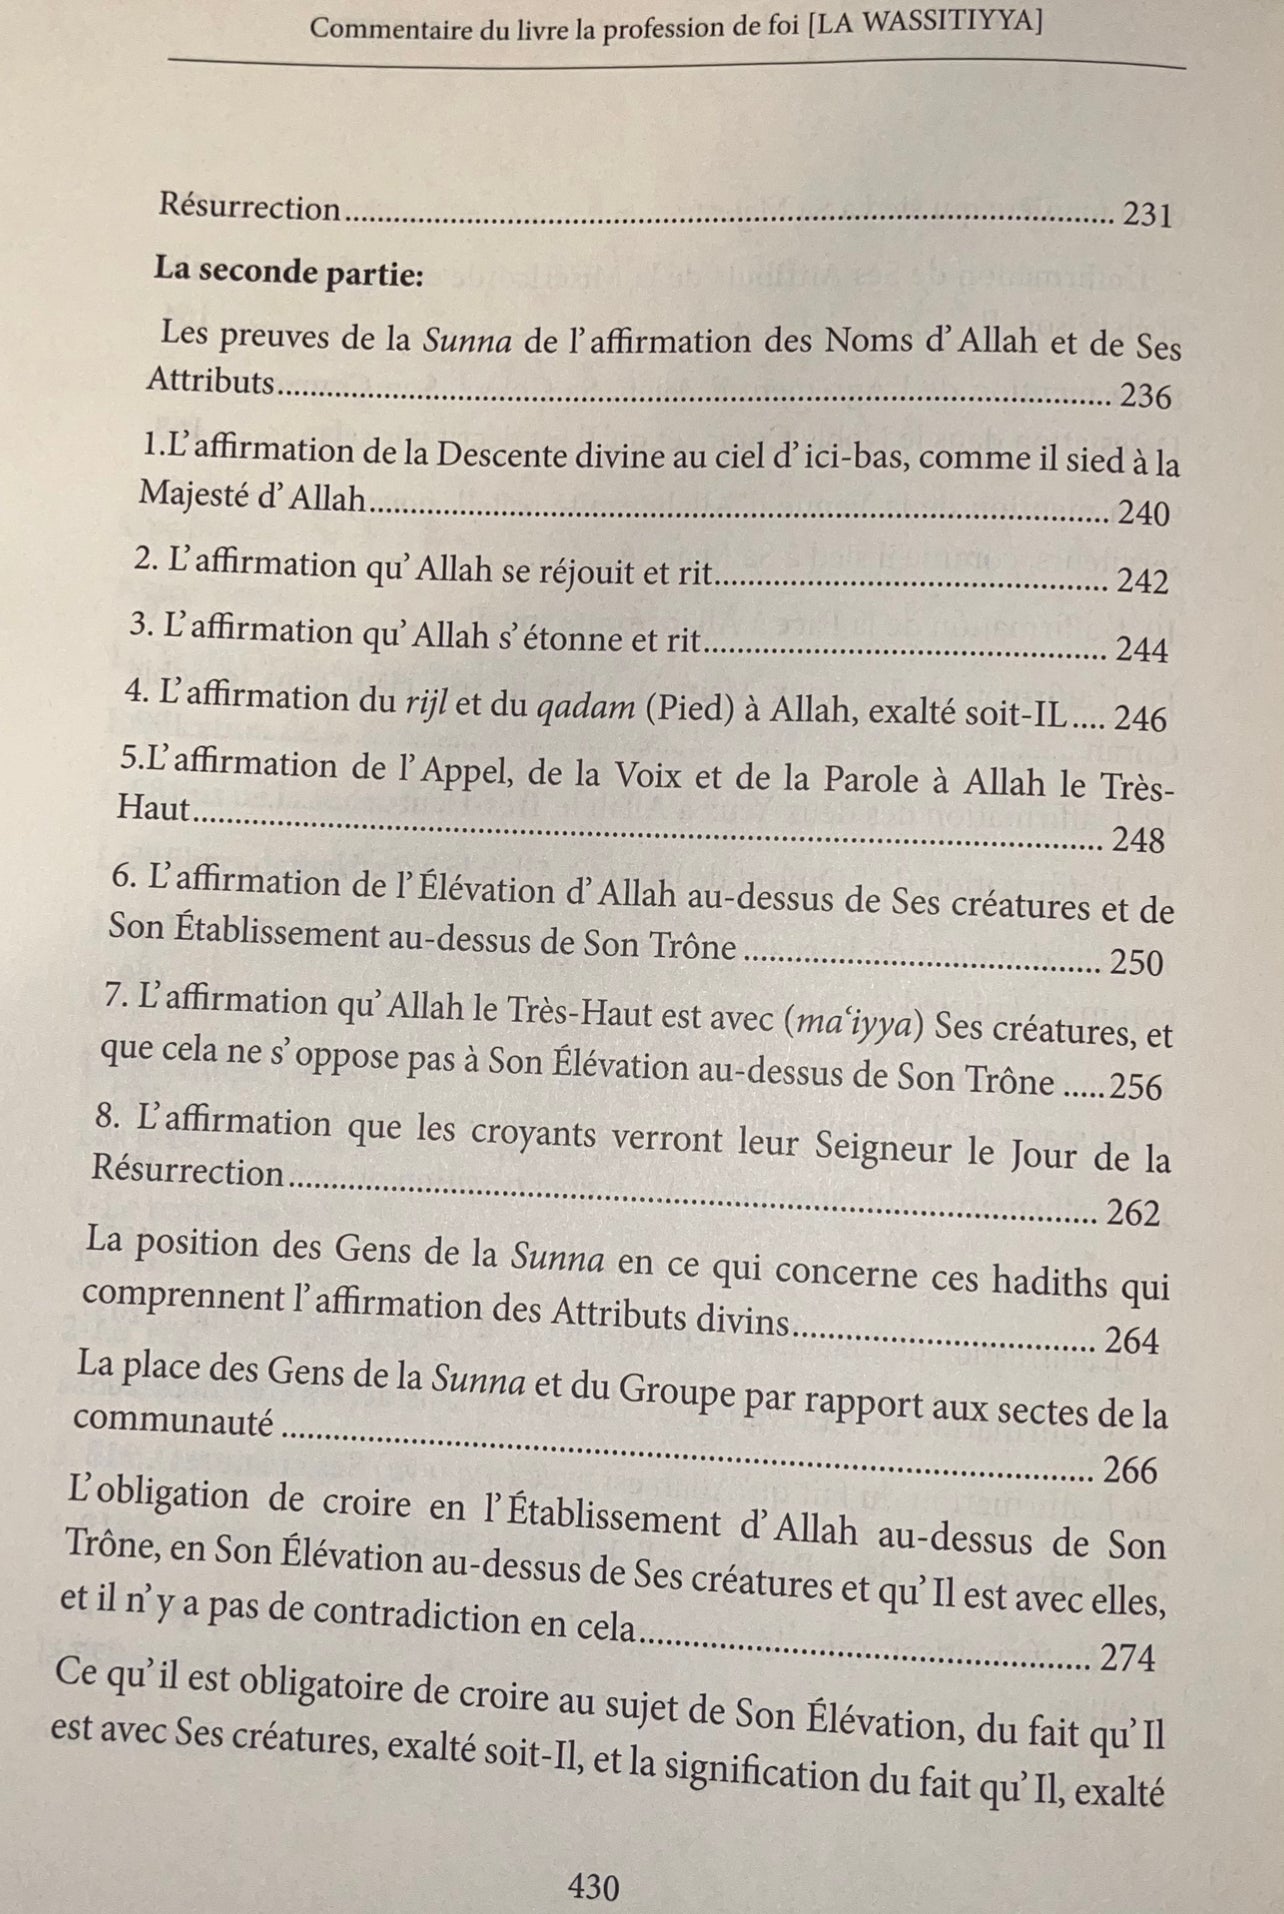 Commentaire du livre la profession de foi al-wassitiyya Ibn badis